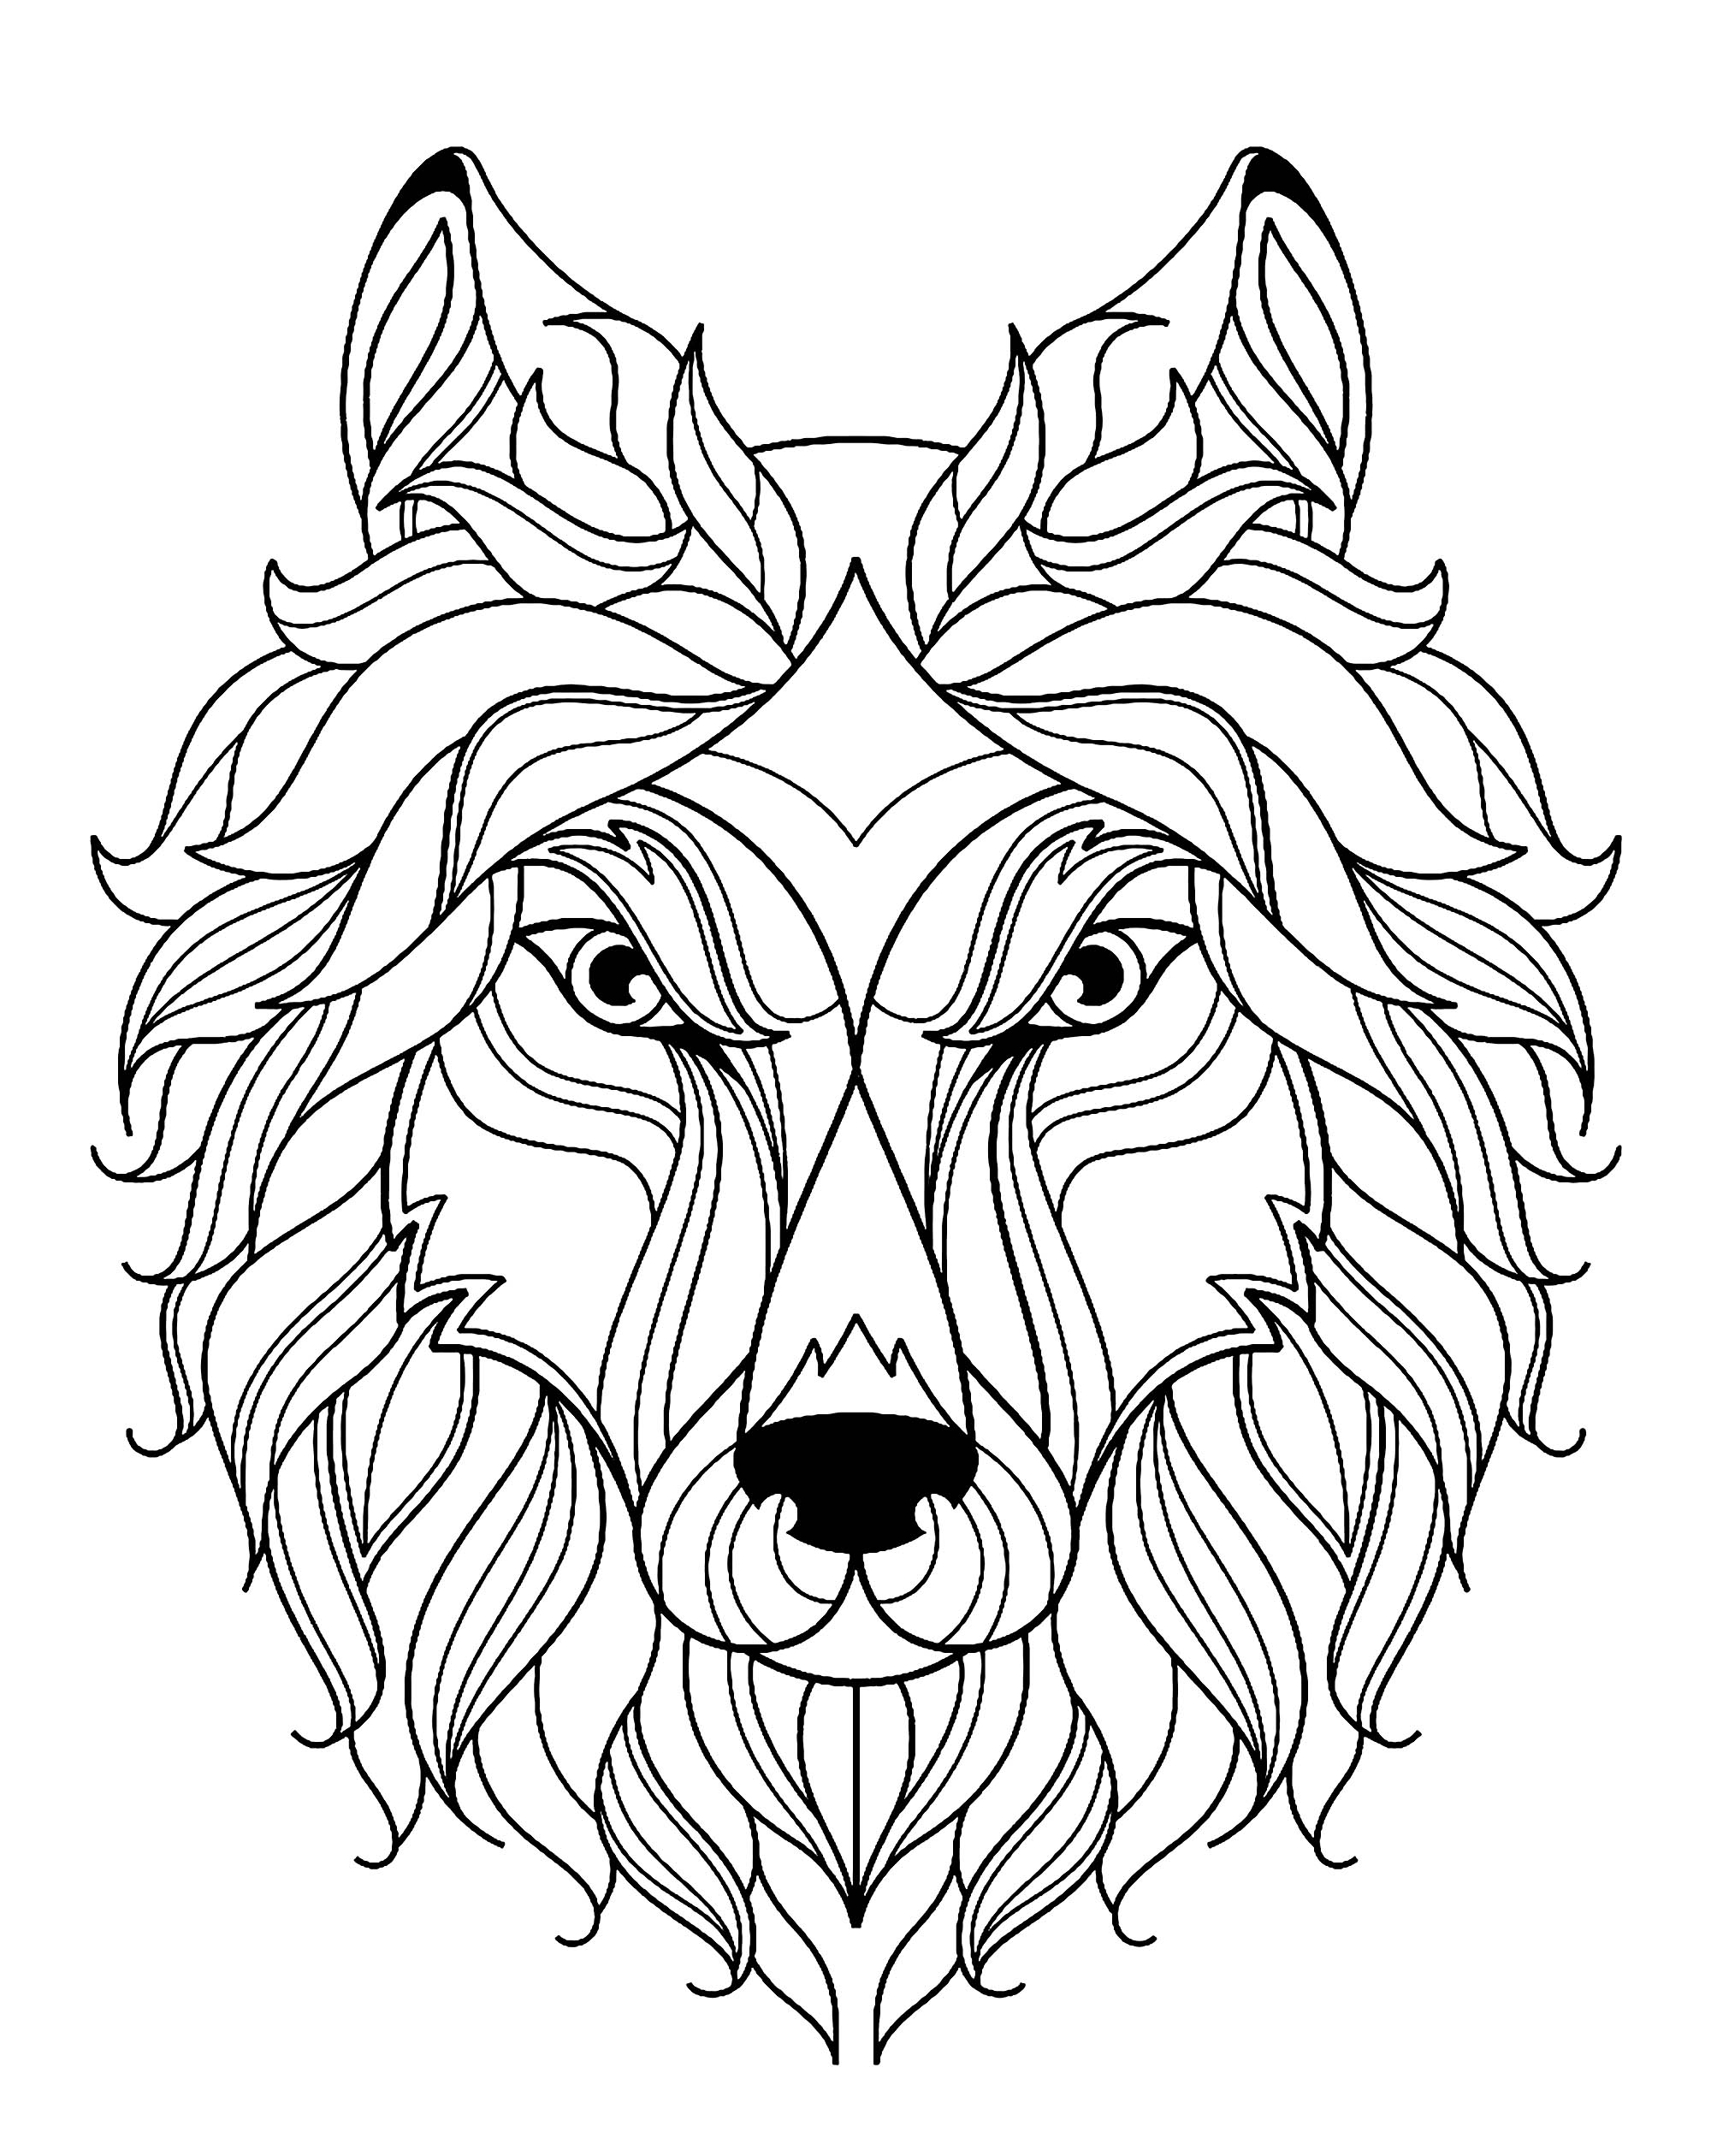 Simple Dibujos para colorear de Lobo, Artista : Алла-Глущенко   Fonte : 123rf